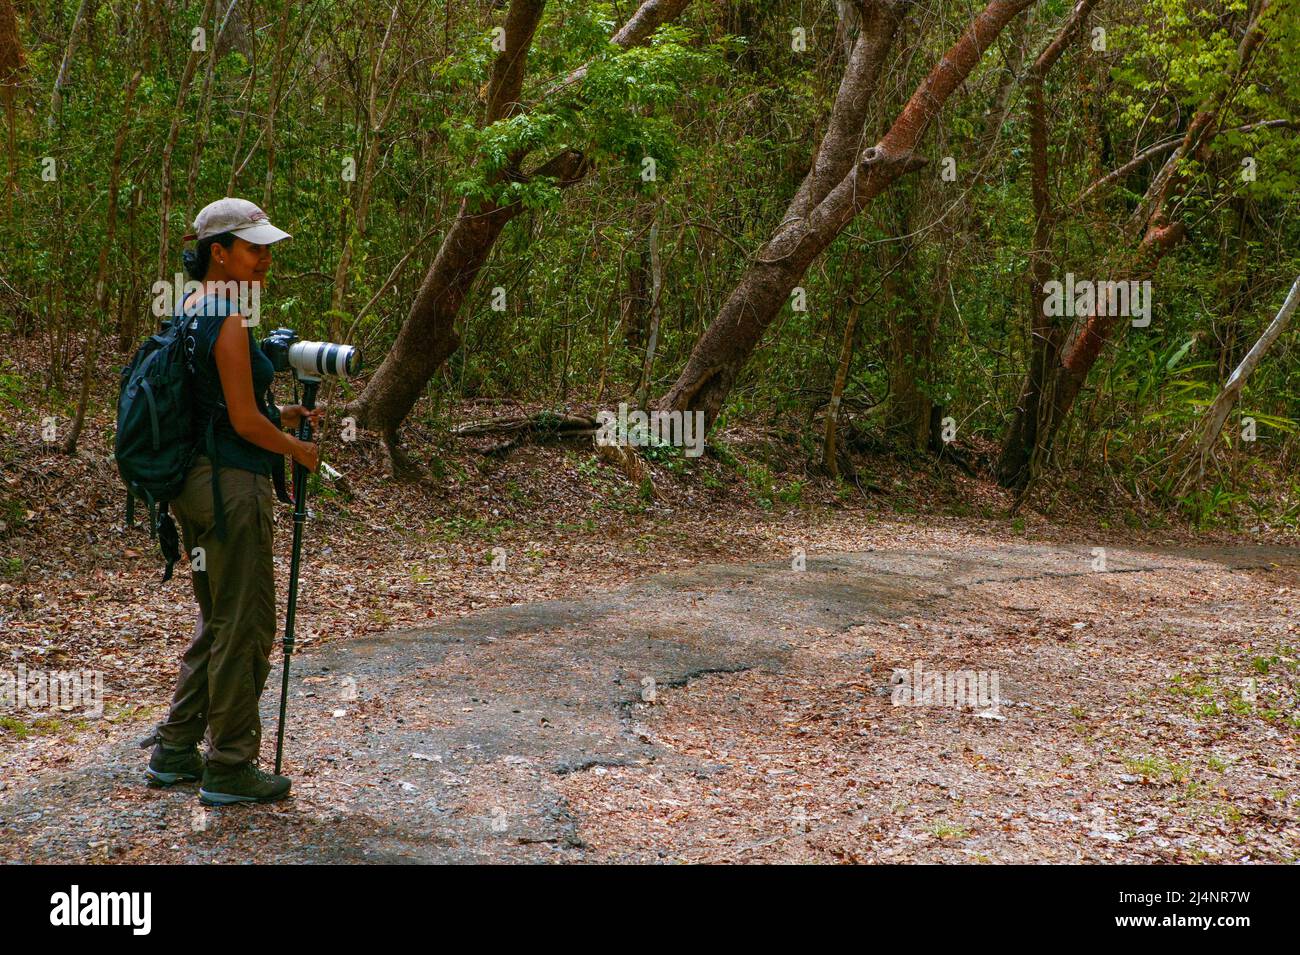 Un turista di natura femminile sta camminando su un sentiero nella foresta pluviale del parco metropolitano, Città di Panama, Repubblica di Panama, America Centrale. Foto Stock